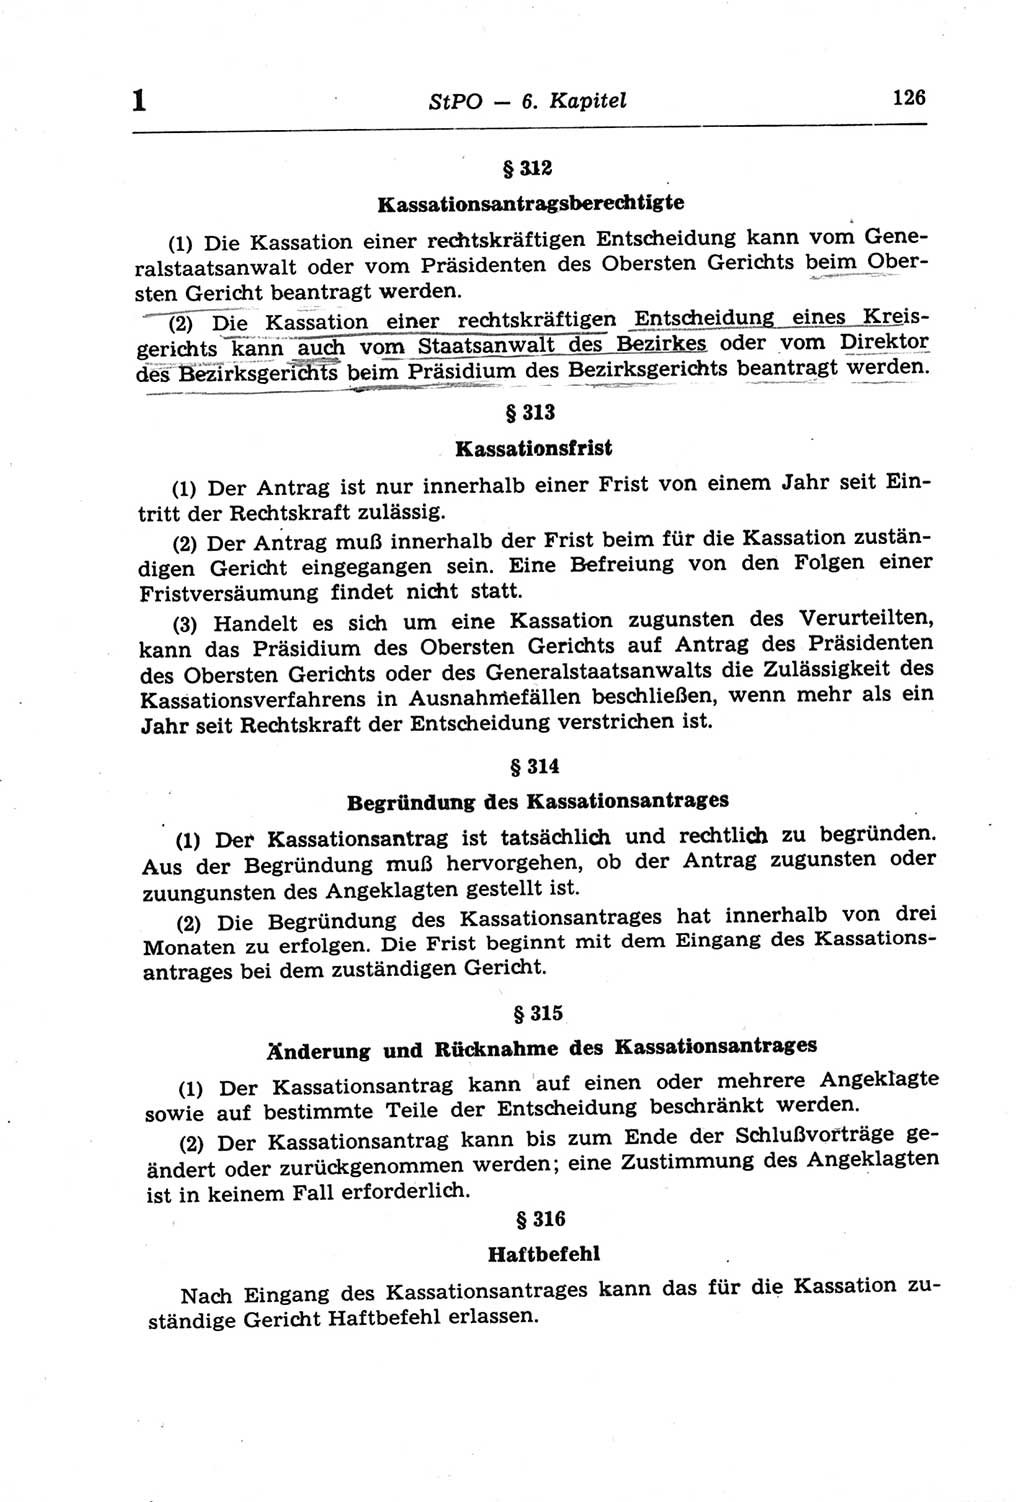 Strafprozeßordnung (StPO) der Deutschen Demokratischen Republik (DDR) und angrenzende Gesetze und Bestimmungen 1968, Seite 126 (StPO Ges. Bstgn. DDR 1968, S. 126)